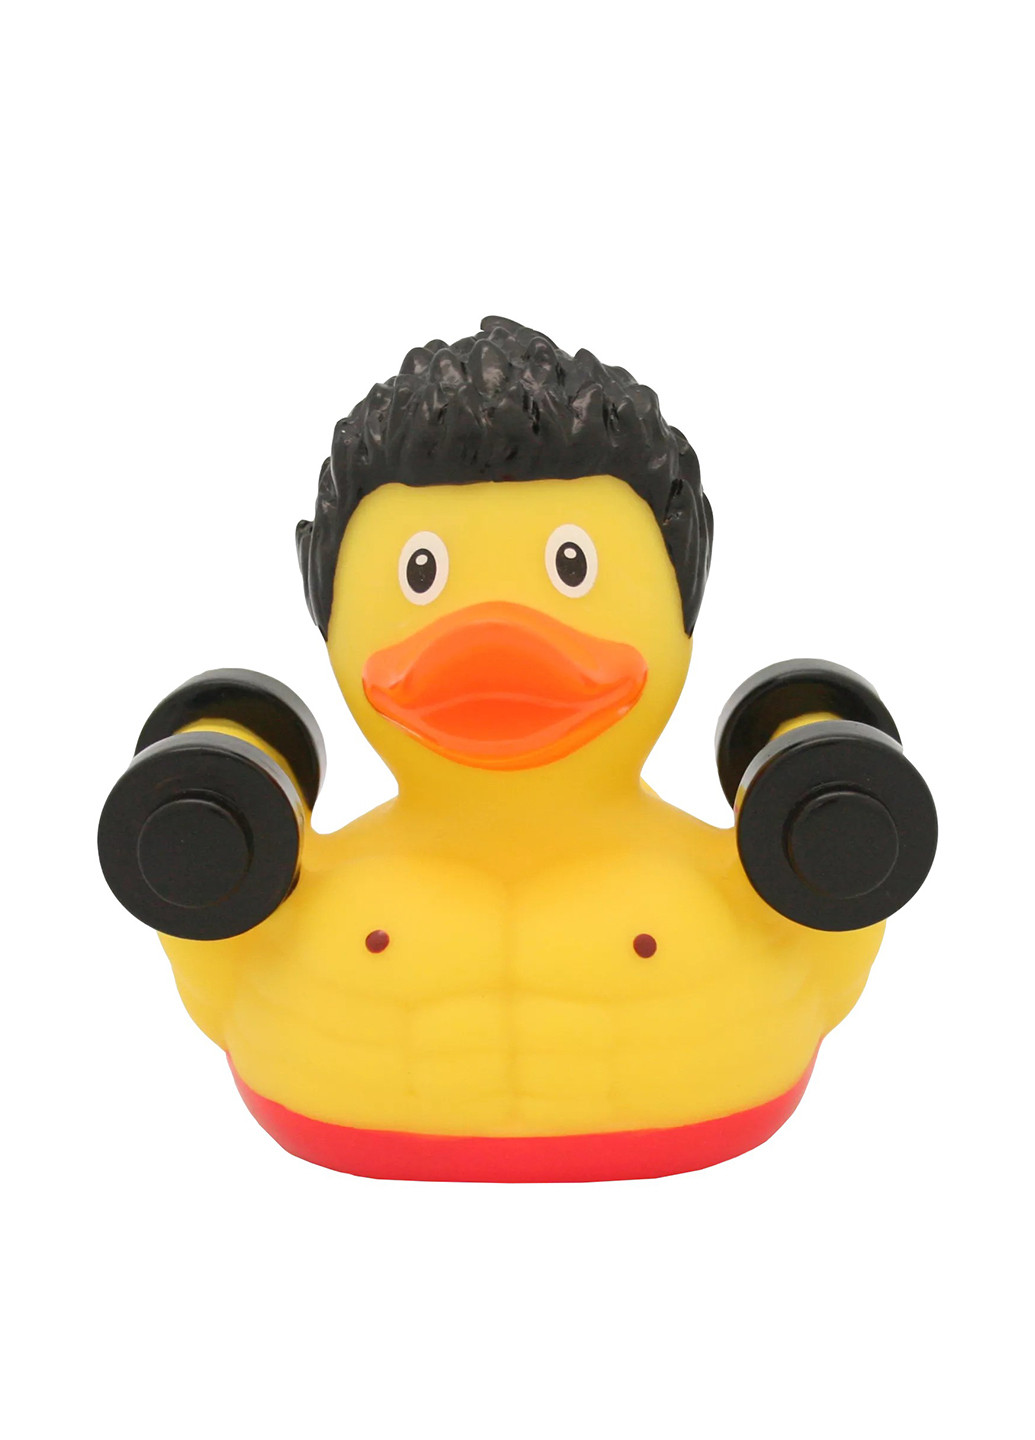 Игрушка для купания Утка Бодибилдер, 8,5x8,5x7,5 см Funny Ducks (250618761)